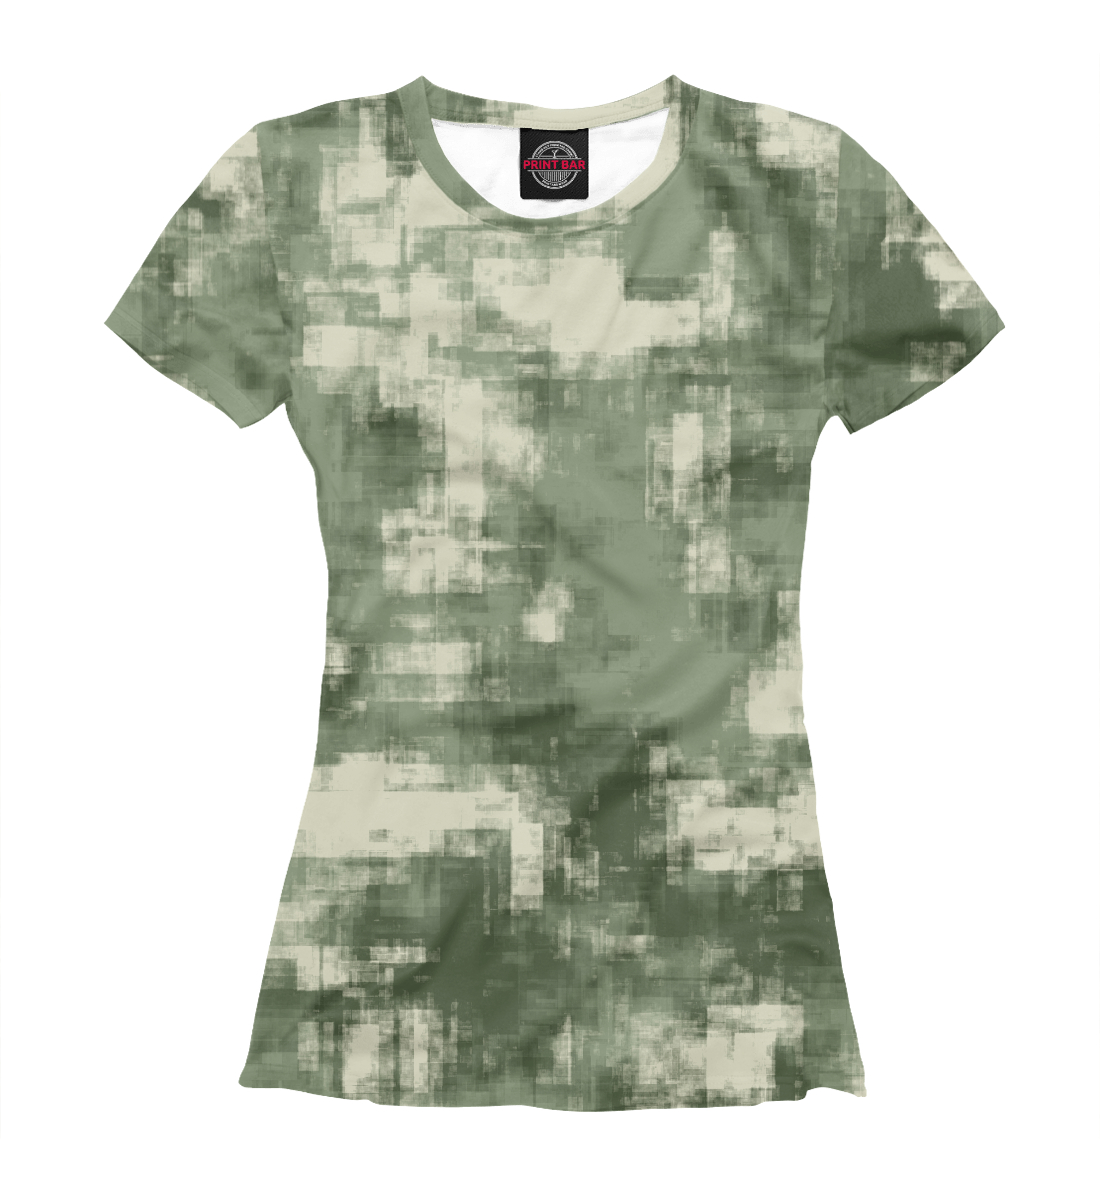 Детская Футболка Военный камуфляж- одежда для мужчин и женщин для девочек, артикул CMF-442561-fut-1mp